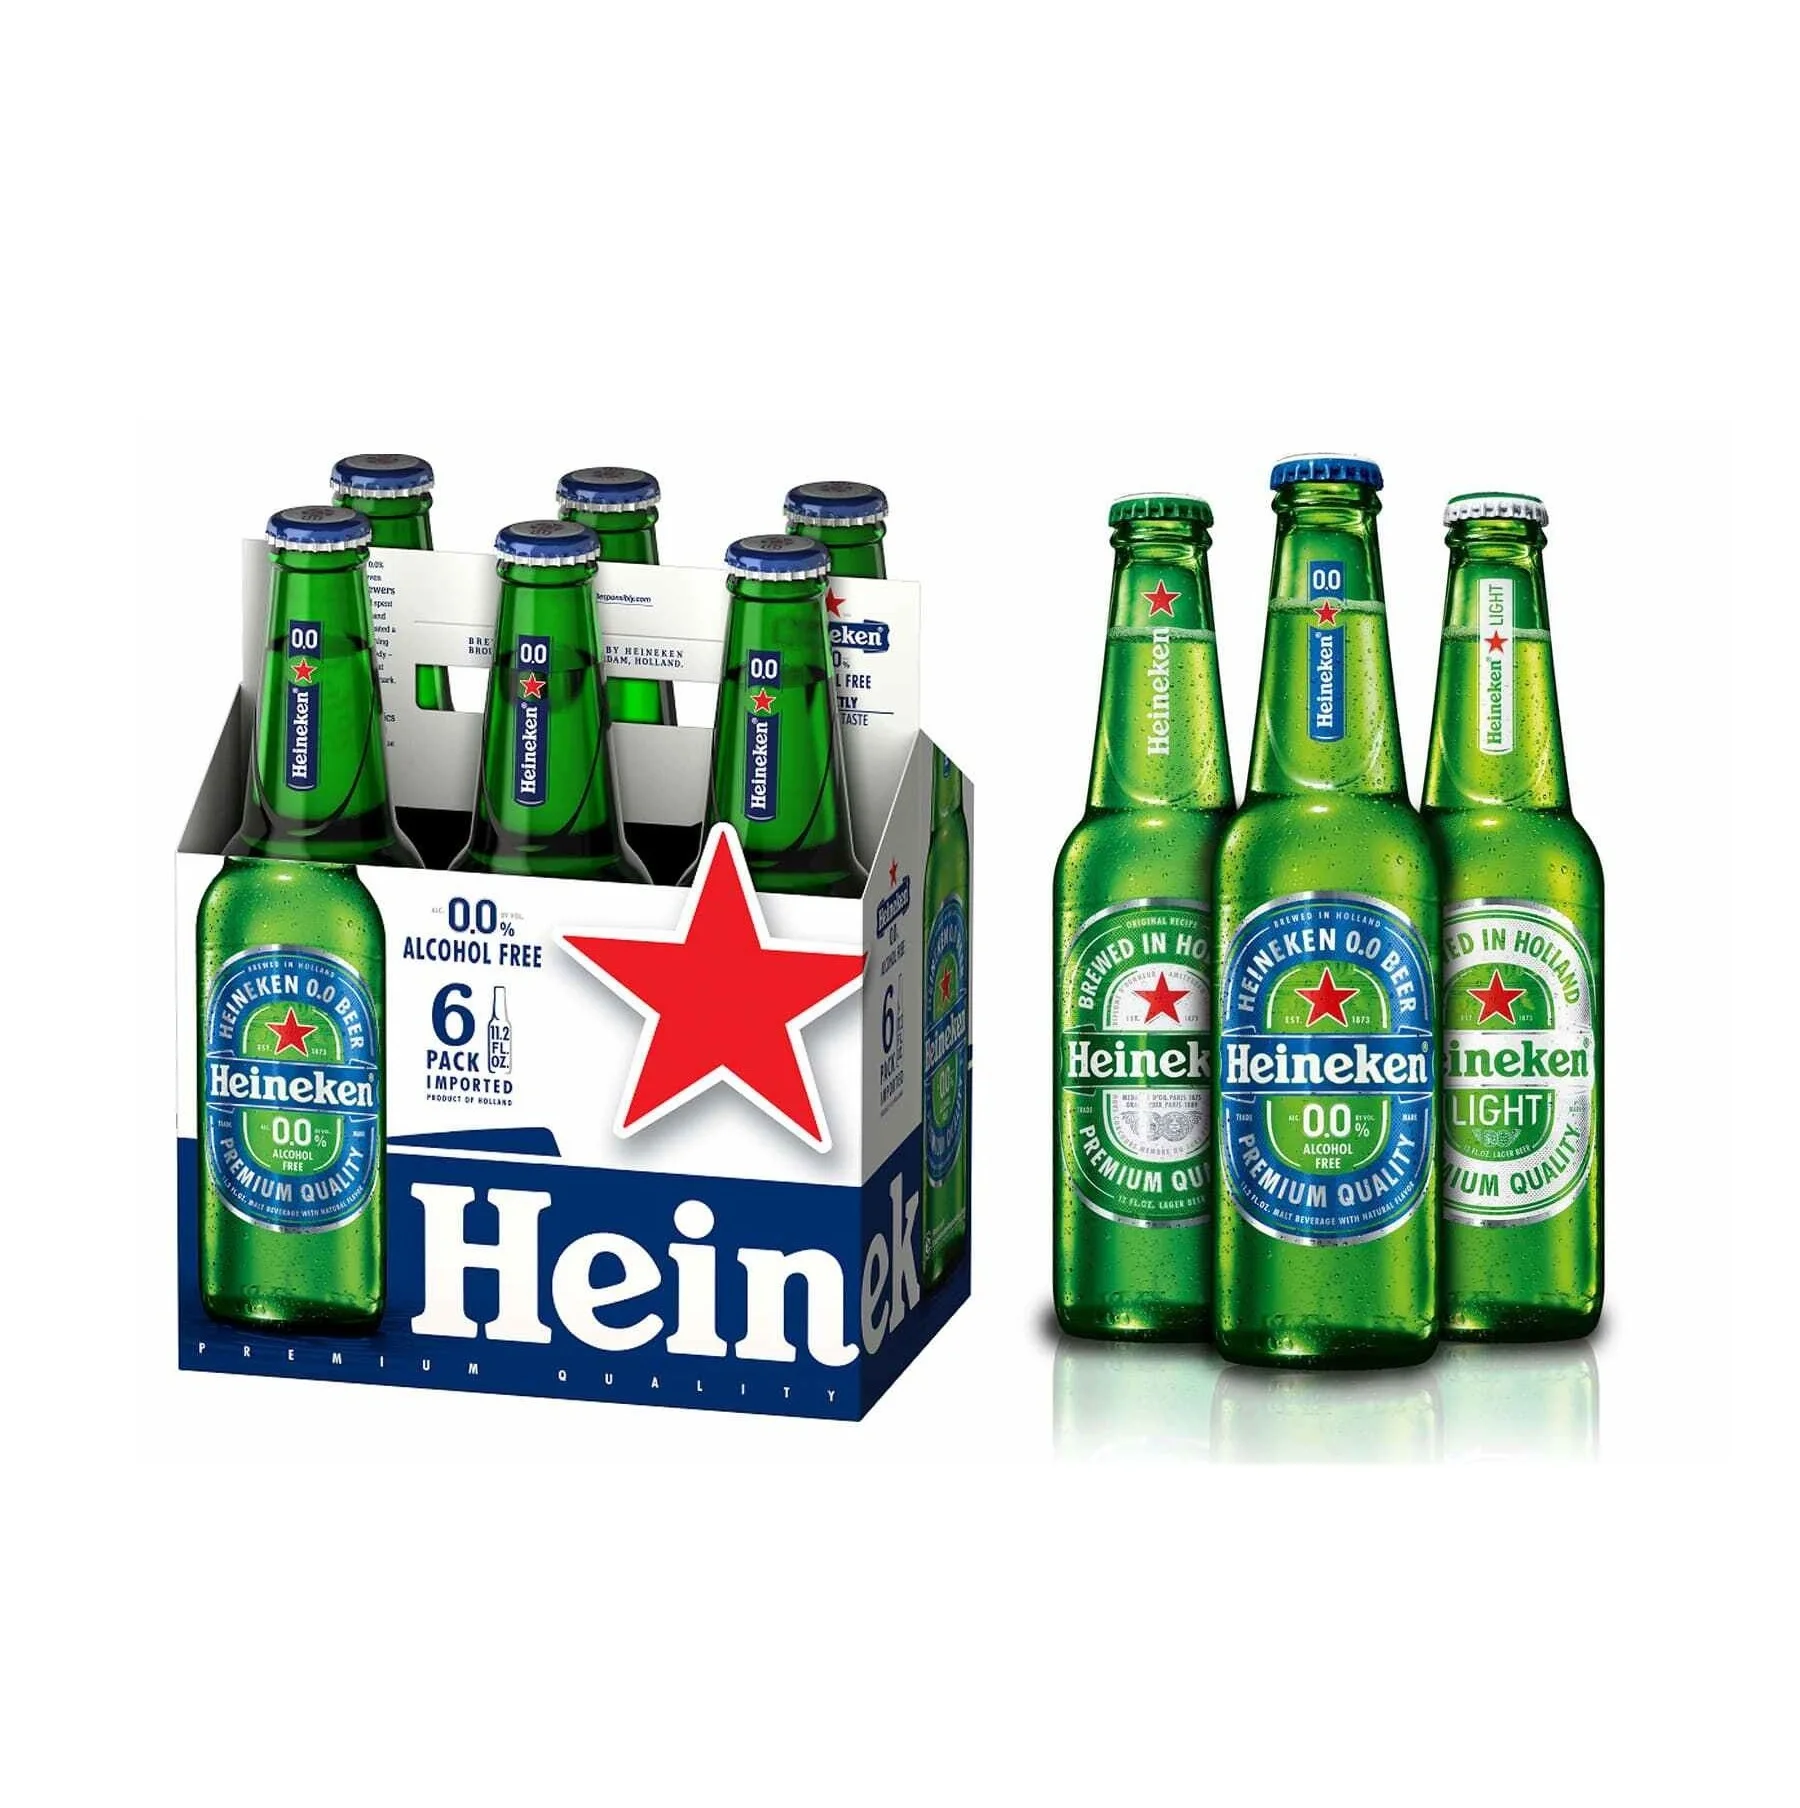 Bia Heineken số lượng lớn: Chúng tôi cung cấp Bia Heineken số lượng lớn với giá cả hợp lý để phục vụ nhu cầu của bạn. Không chỉ có chất lượng tuyệt vời, sản phẩm của chúng tôi còn được đóng gói và vận chuyển đến nơi bạn muốn.